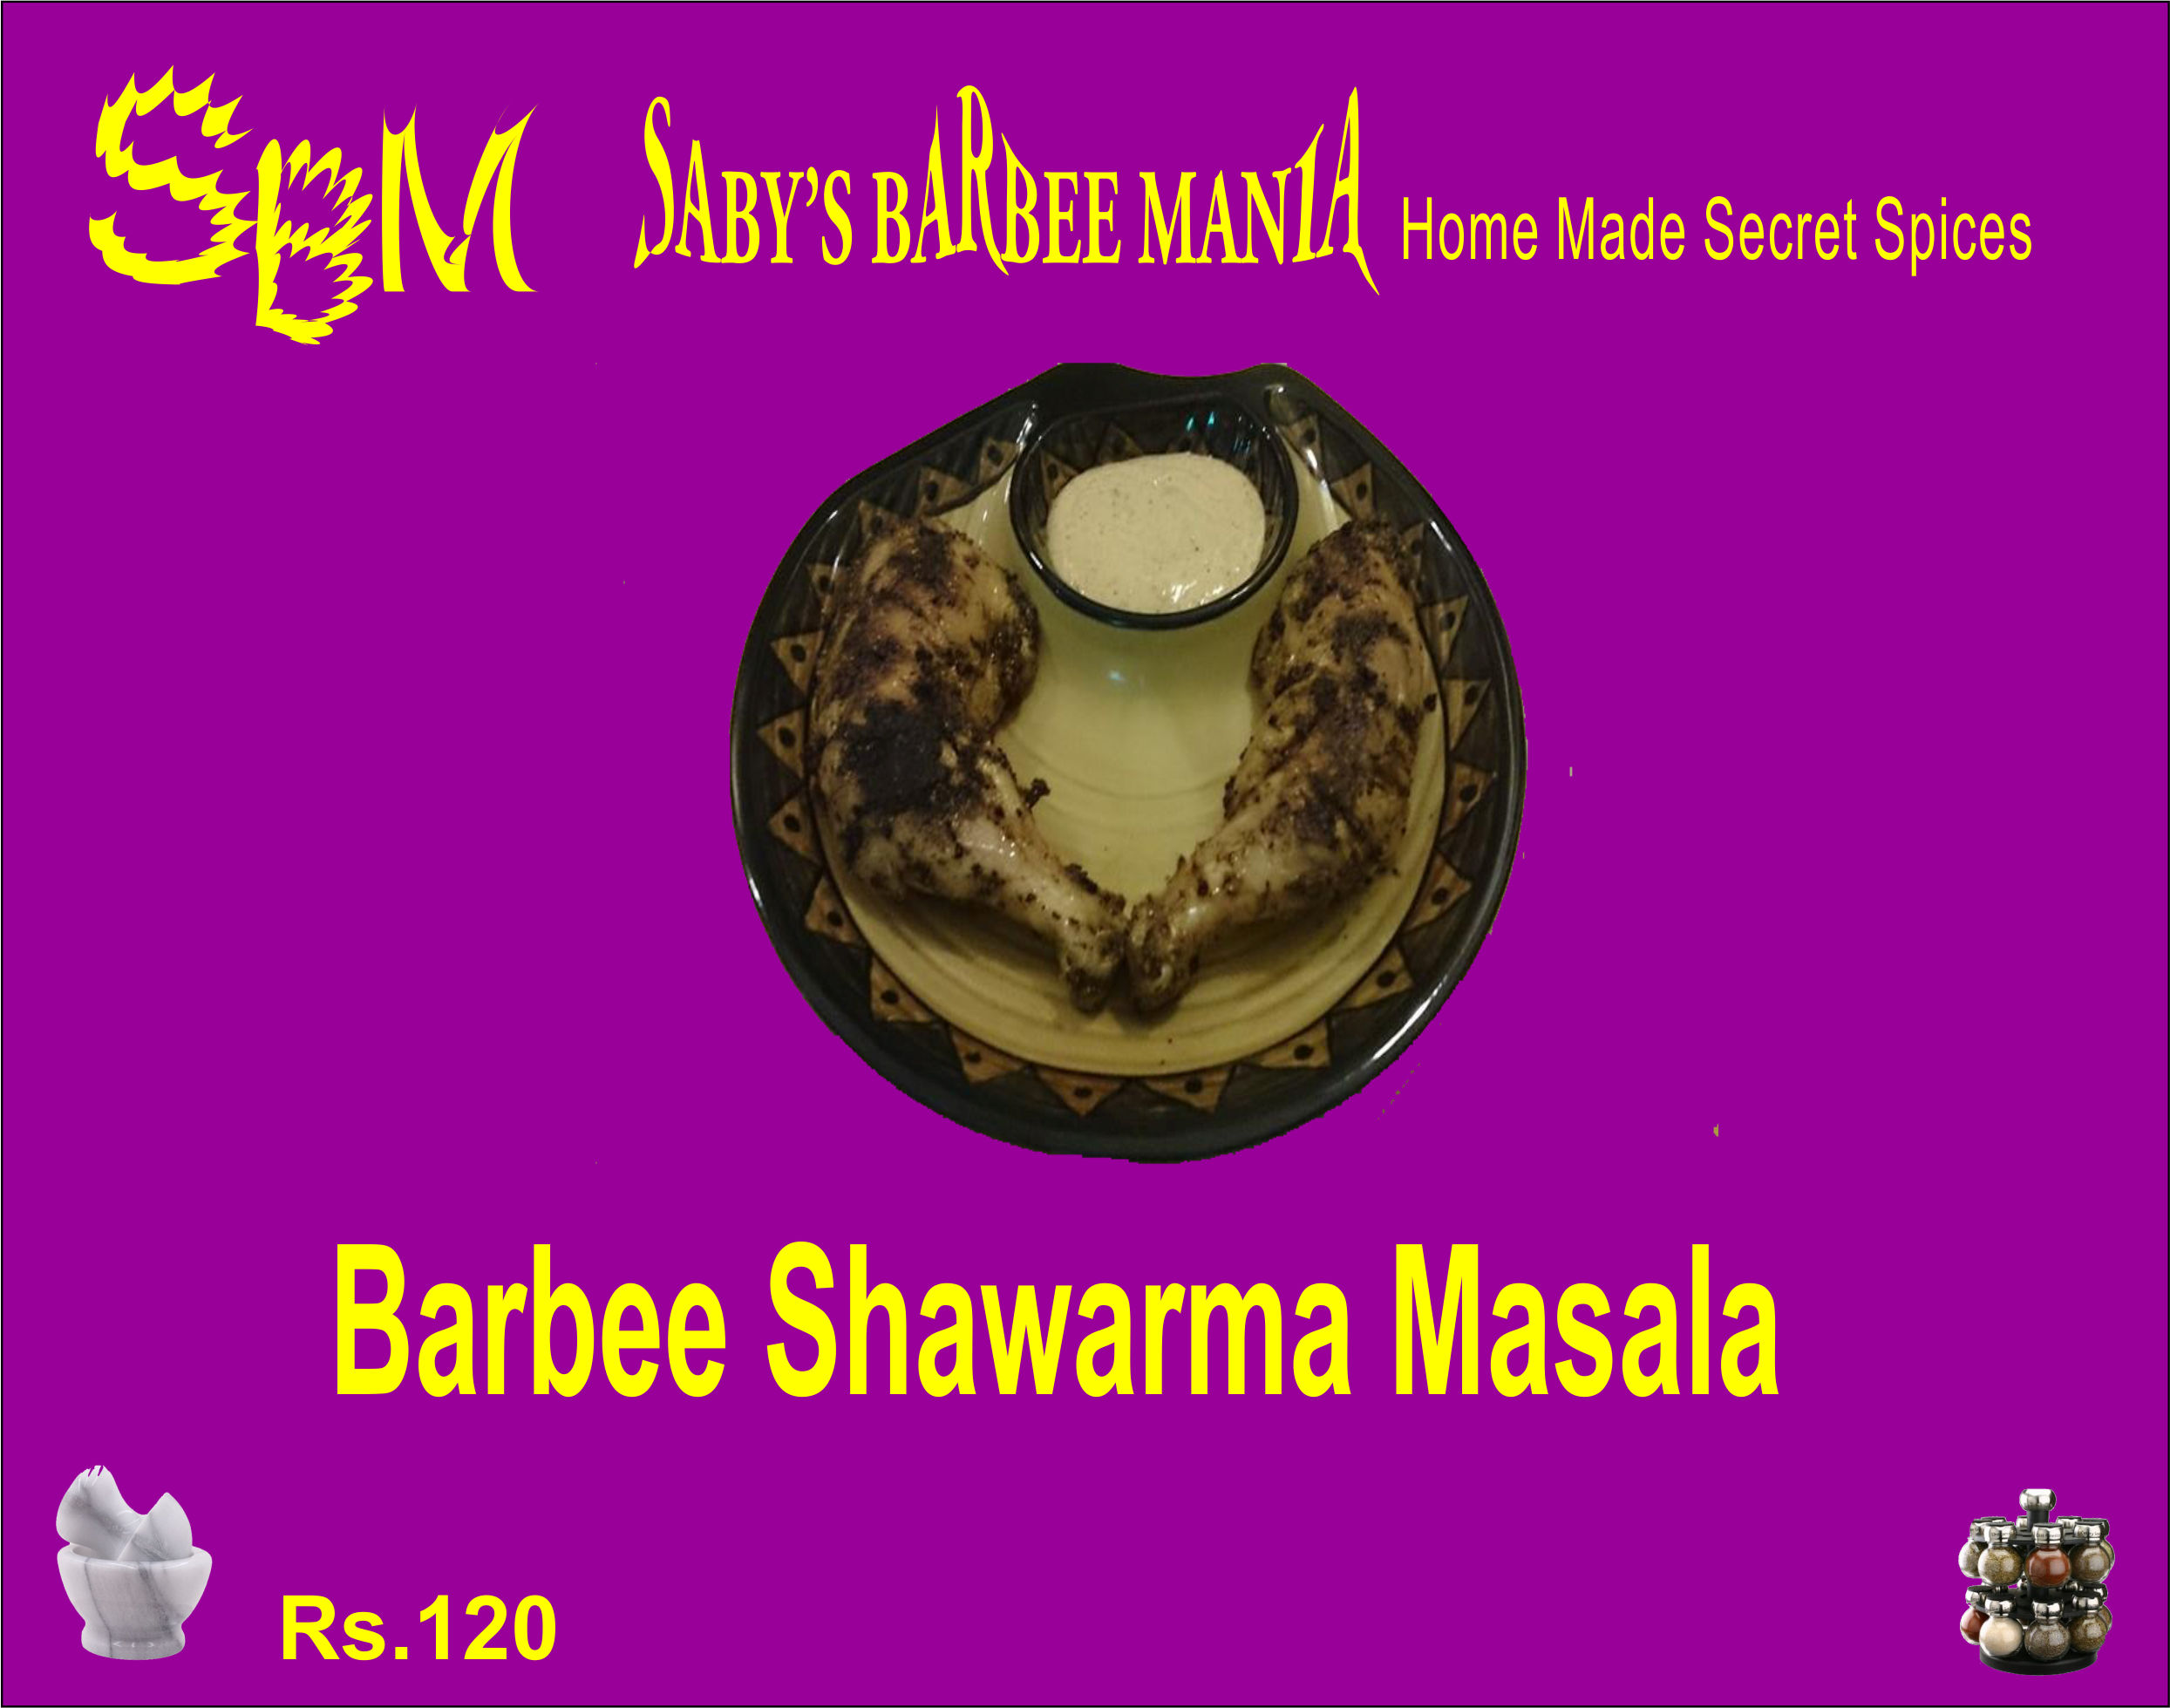 Barbee Shawarma Masala